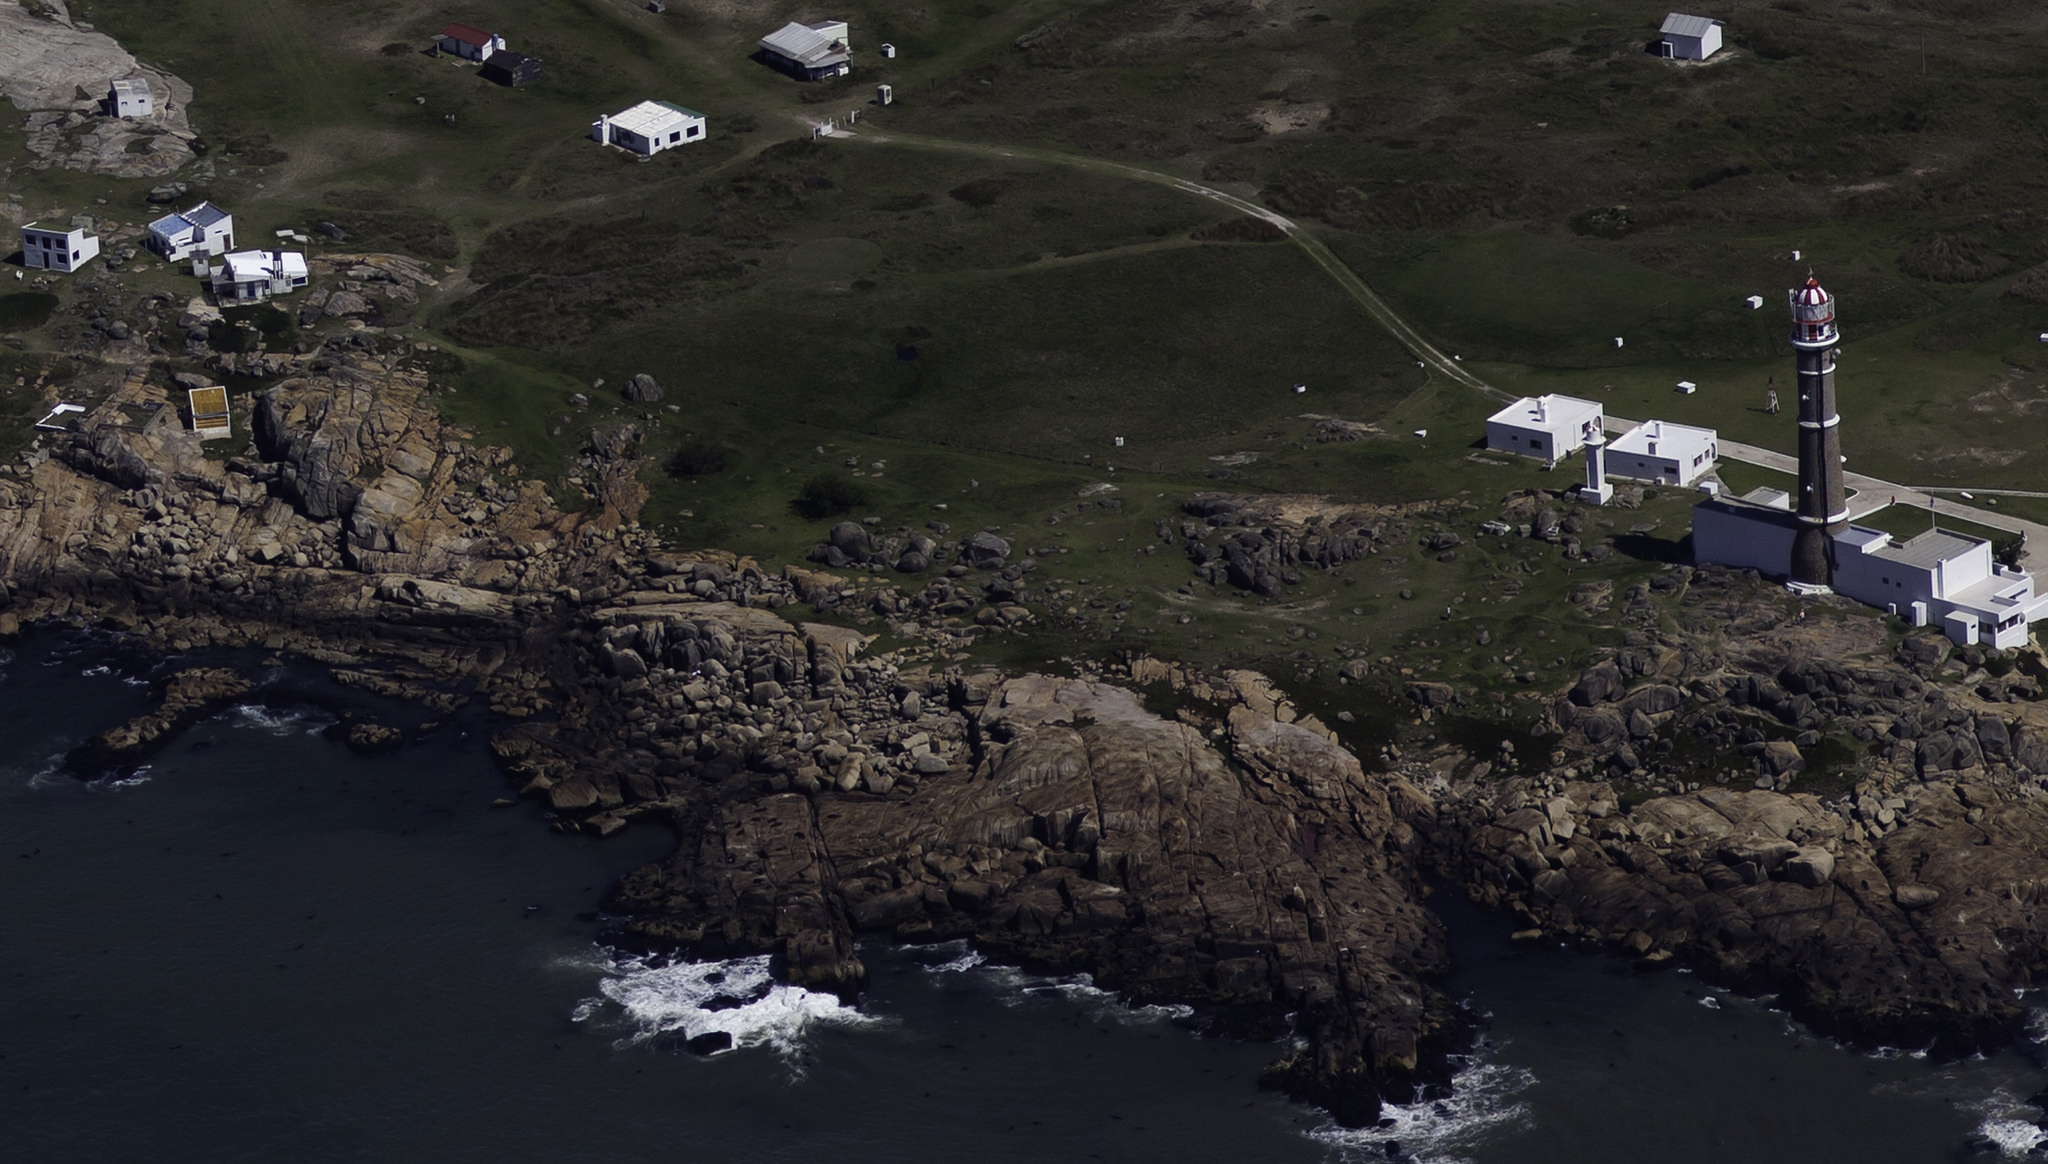 Vista aérea del faro de Cabo Polonio y algunas casas del área rocosa de la costa. Foto: Jimmy Baikovicius / Flickr